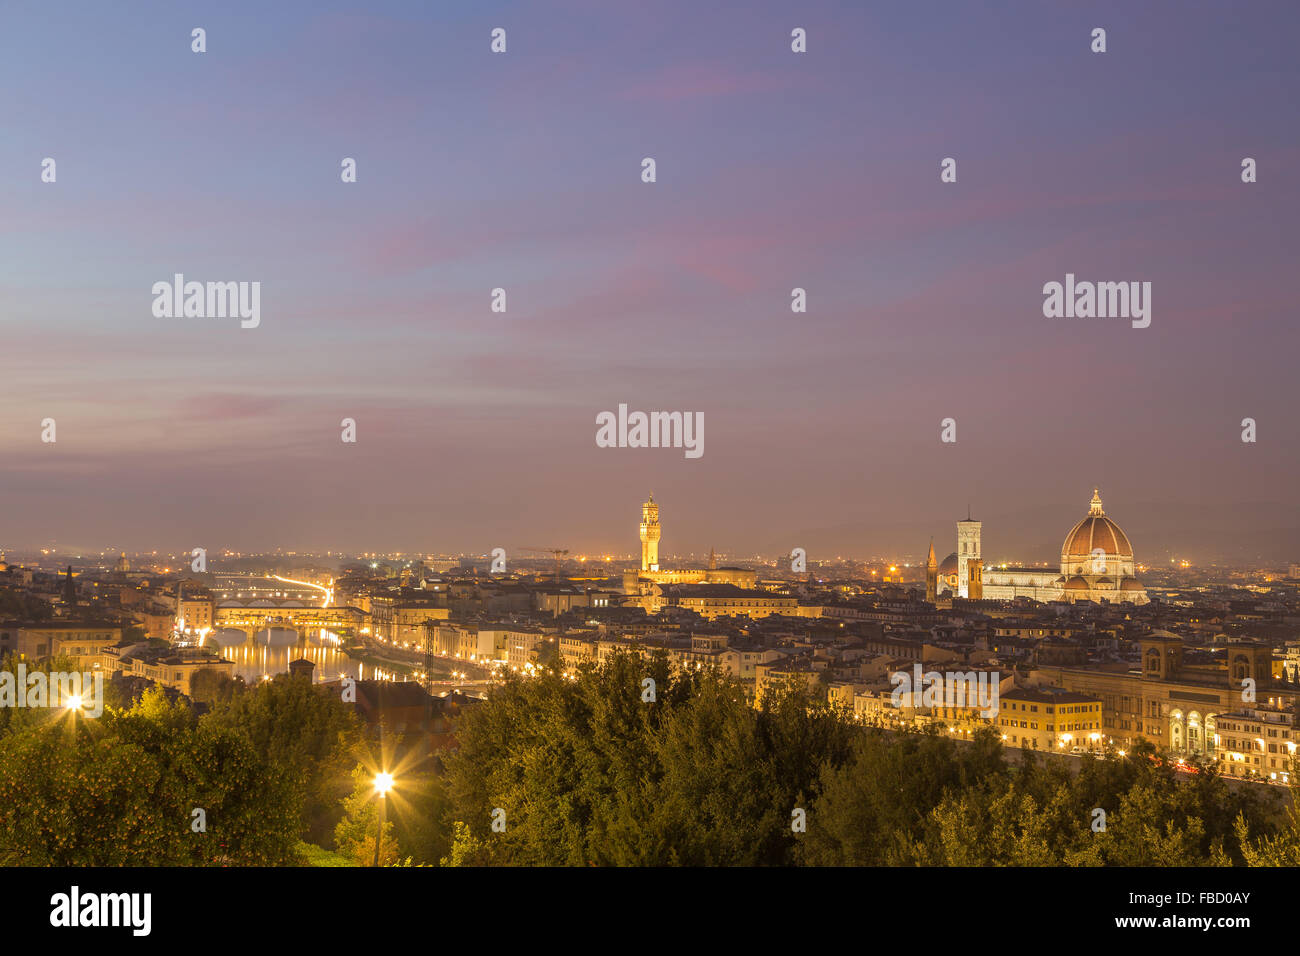 Palazzo Vecchio, la cathédrale de Florence et l'Arno, au crépuscule, centre historique, Florence, Toscane, Italie Banque D'Images